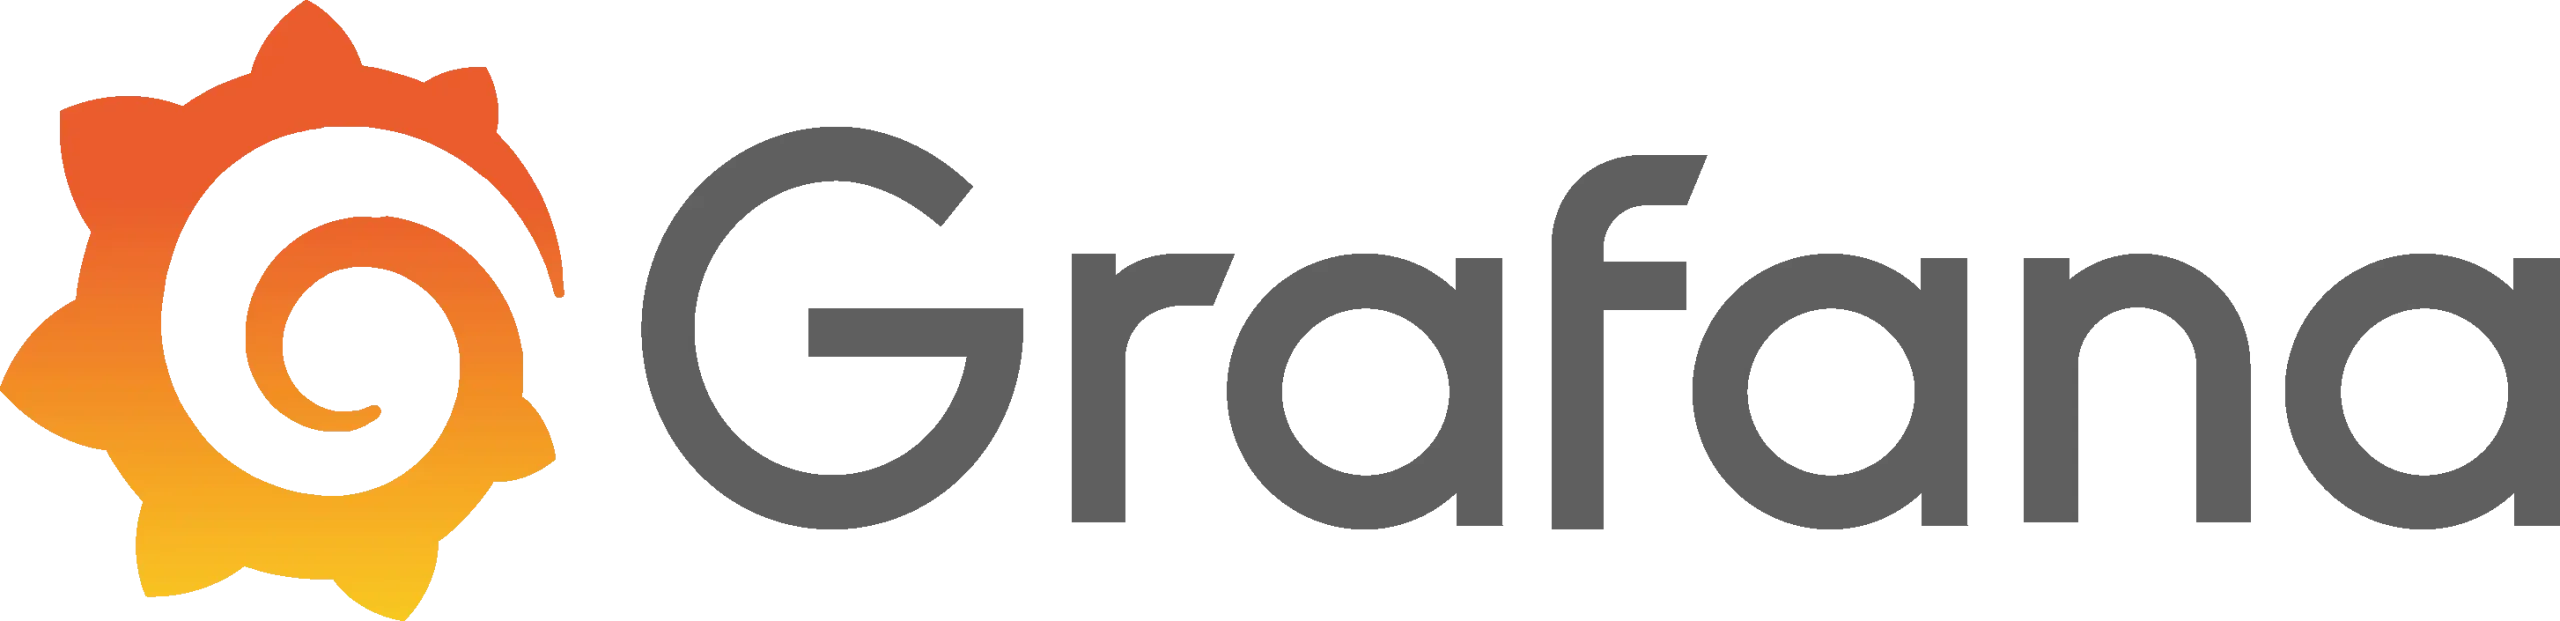 grafana logo scaled